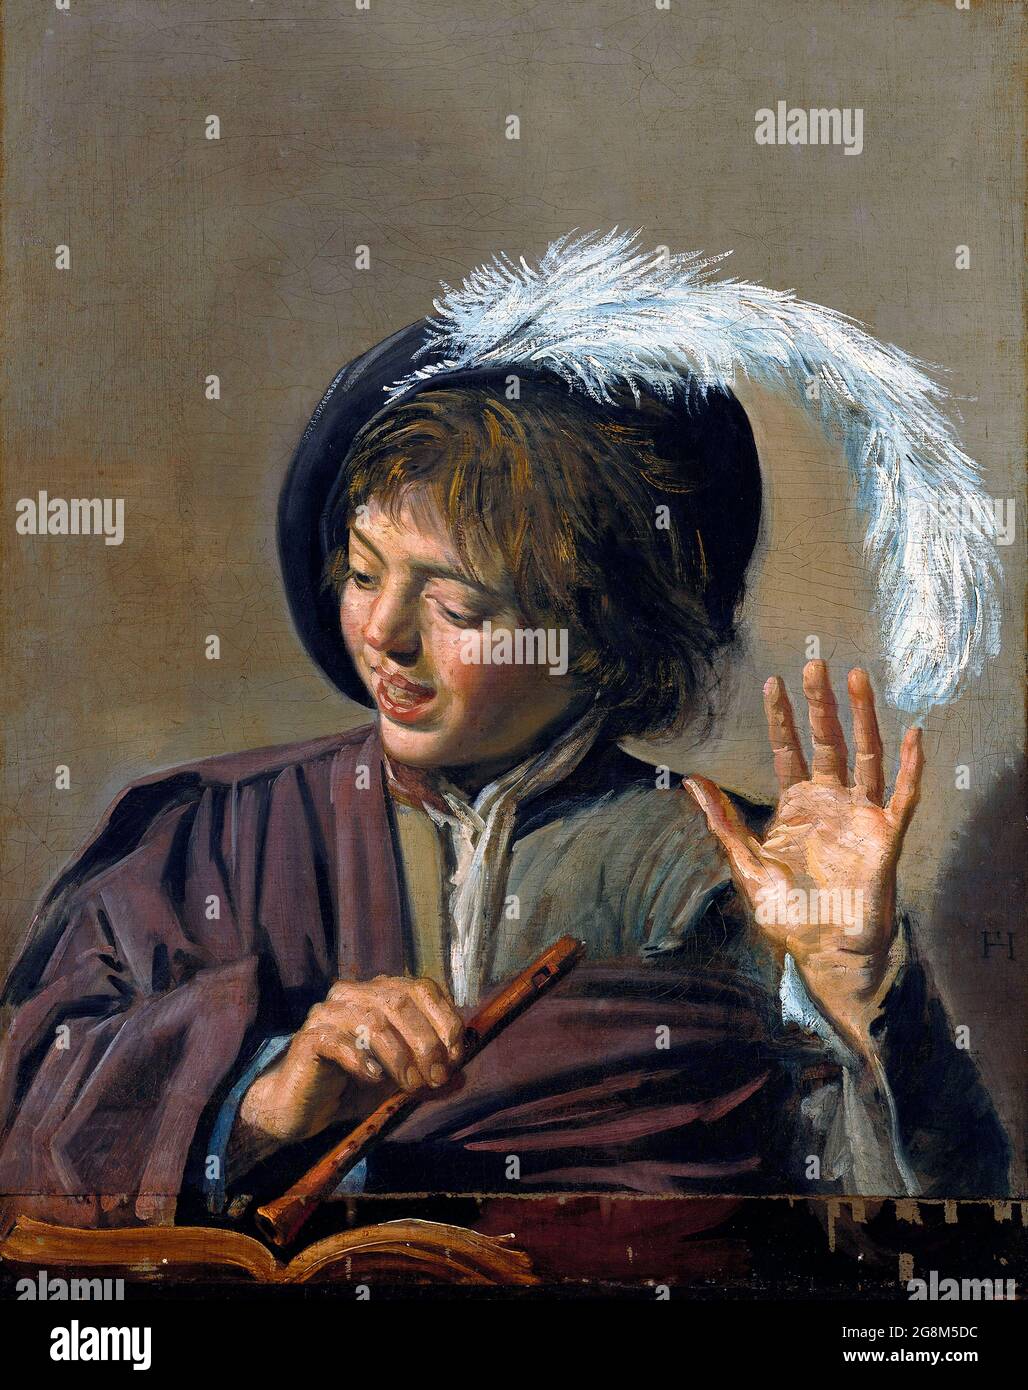 Chant Boy with a Flute par Frans Hals (c.1582-1666), huile sur toile, c. 1623 Banque D'Images